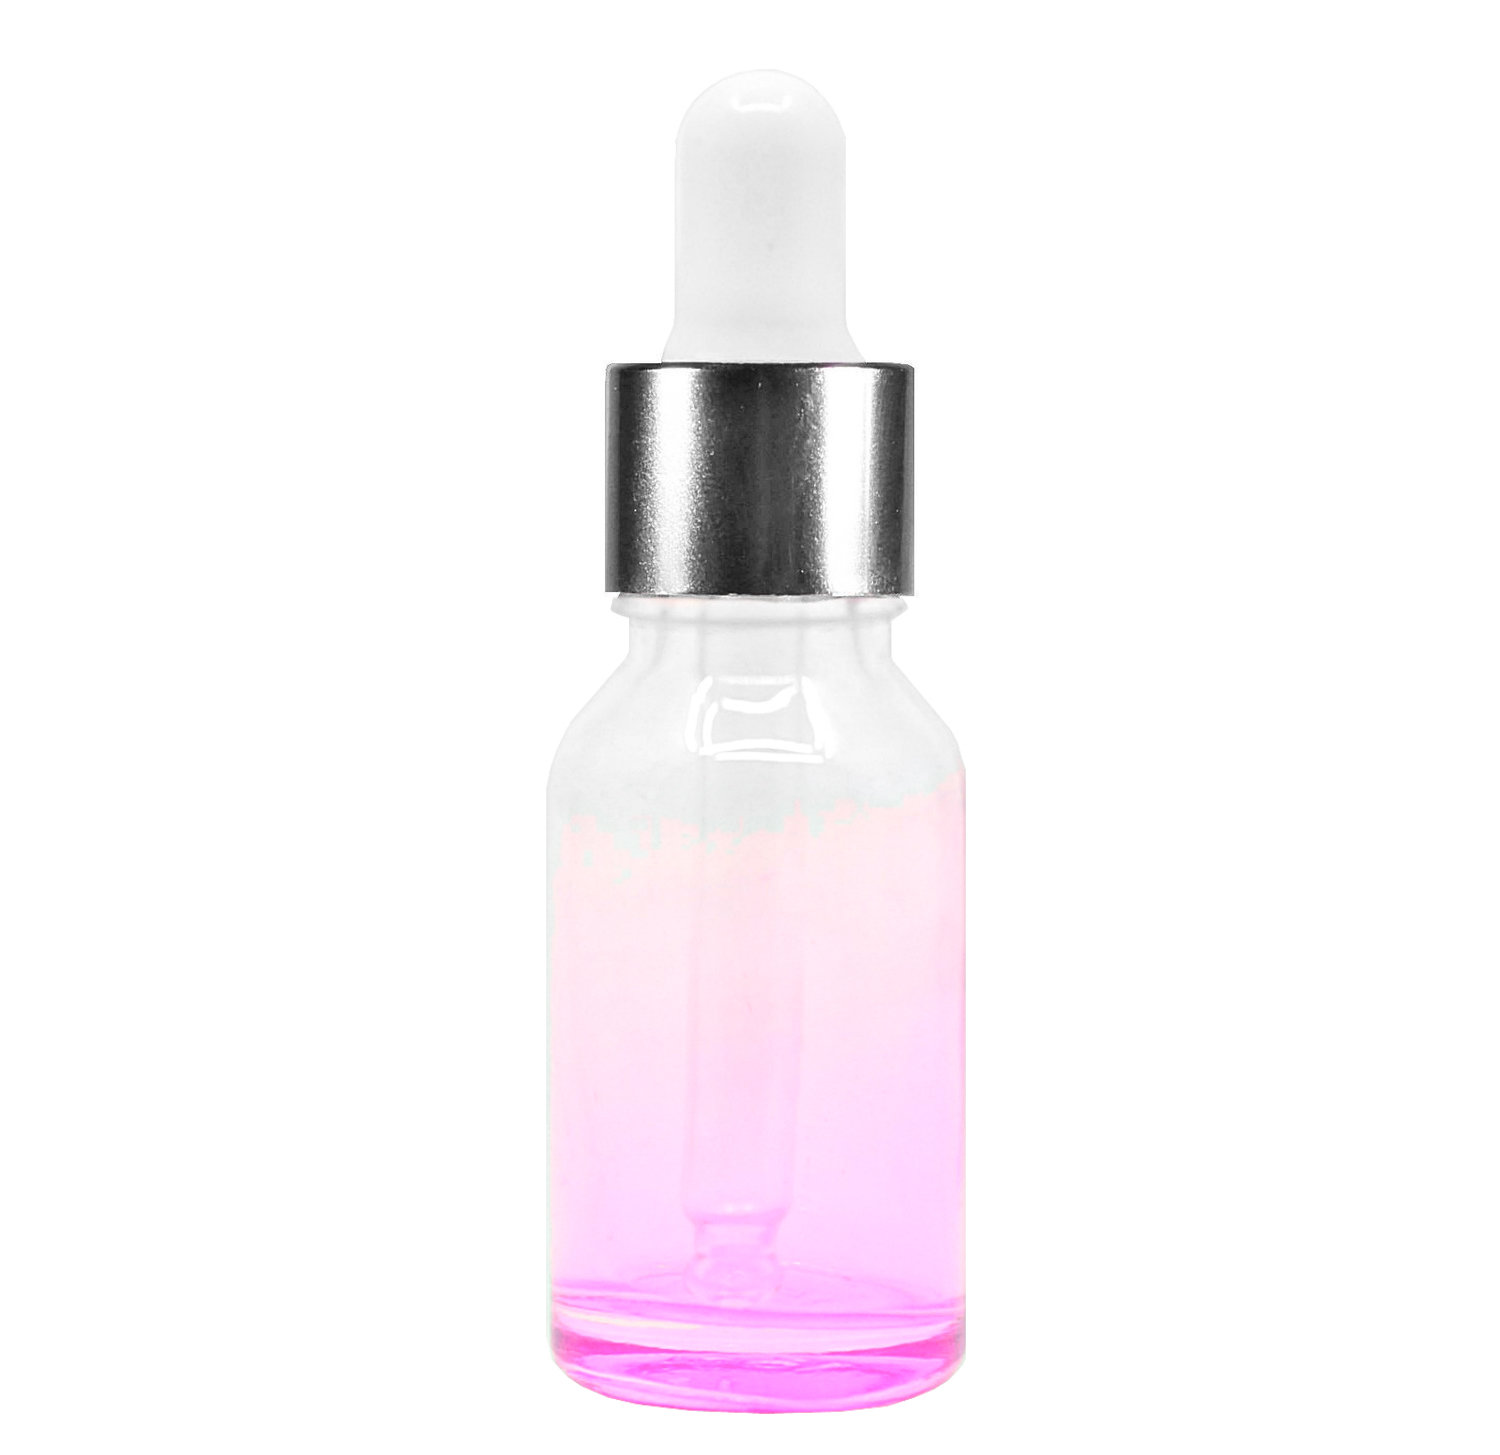 15ml glass dropper bottle (Pink)